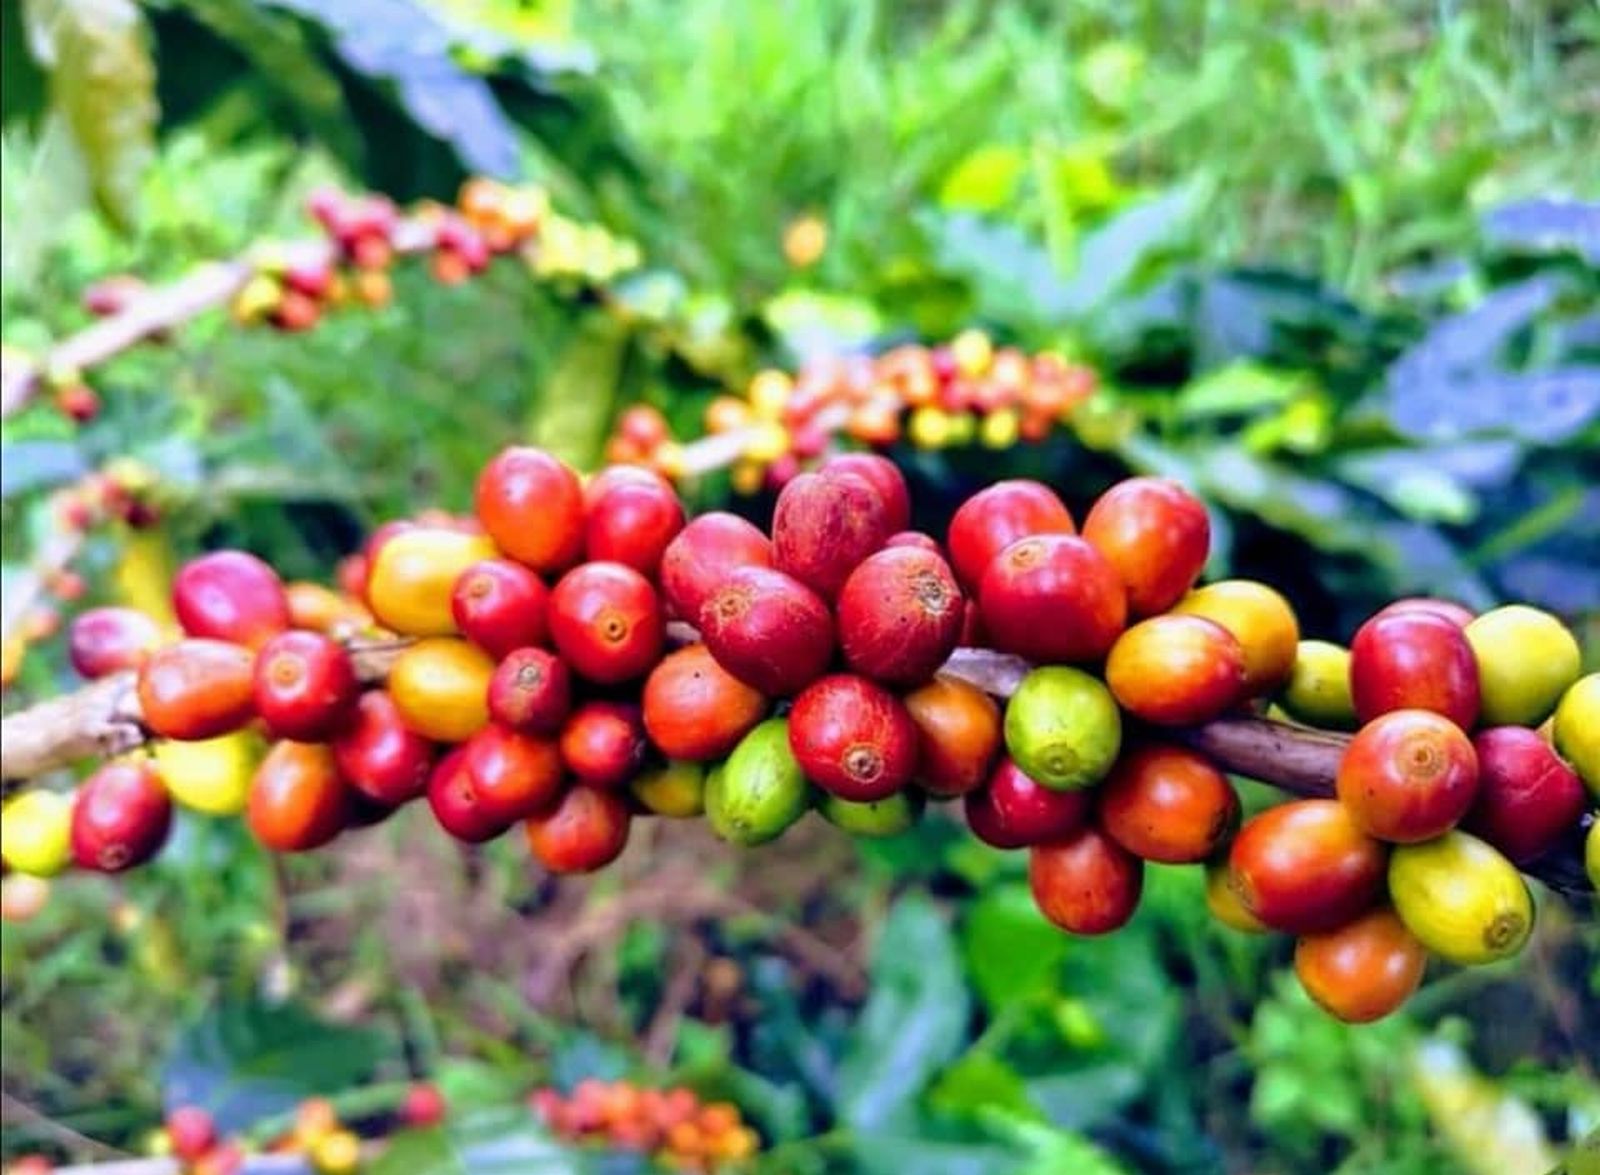  （古城封底主文）乐活//咖啡厅业者转当农夫种咖啡，深究朴门永续农耕